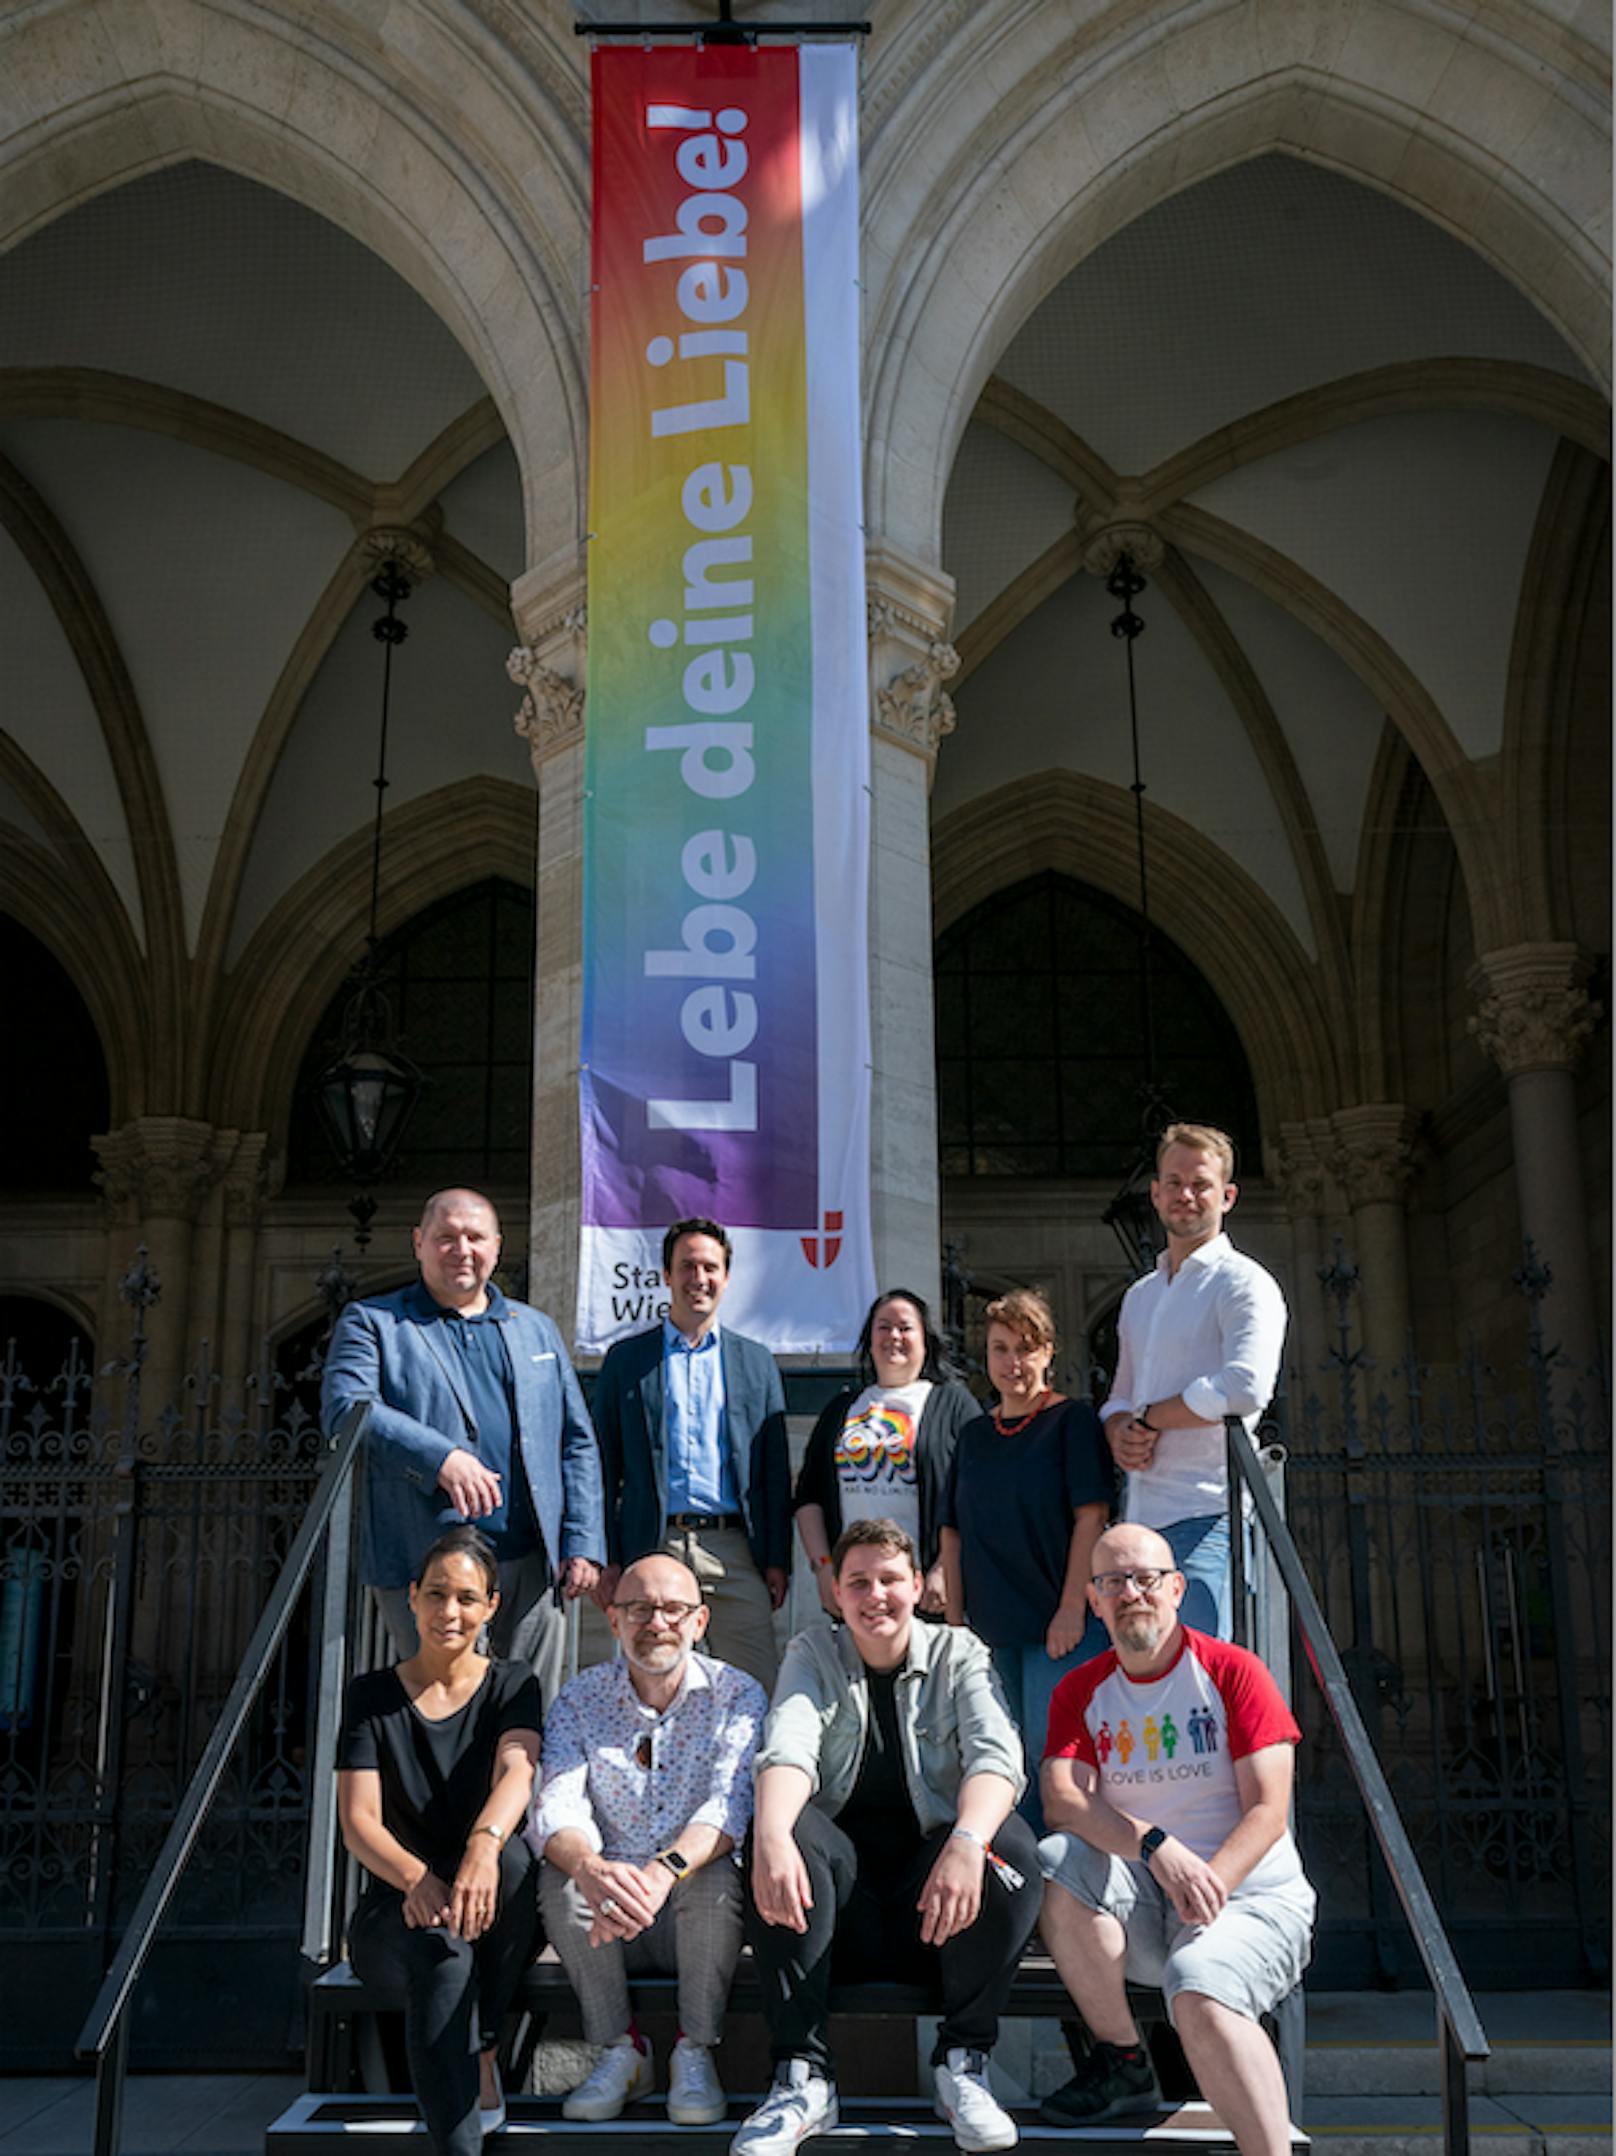 Zum Pride Month wurde am Rathaus gemeinsam mit der HOSI Wien, Vienna Pride Veranstalter Stonewall GmbH und Vizebürgermeister Christoph Wiederkehrr (Neos) die Regenbogenflagge gehisst.